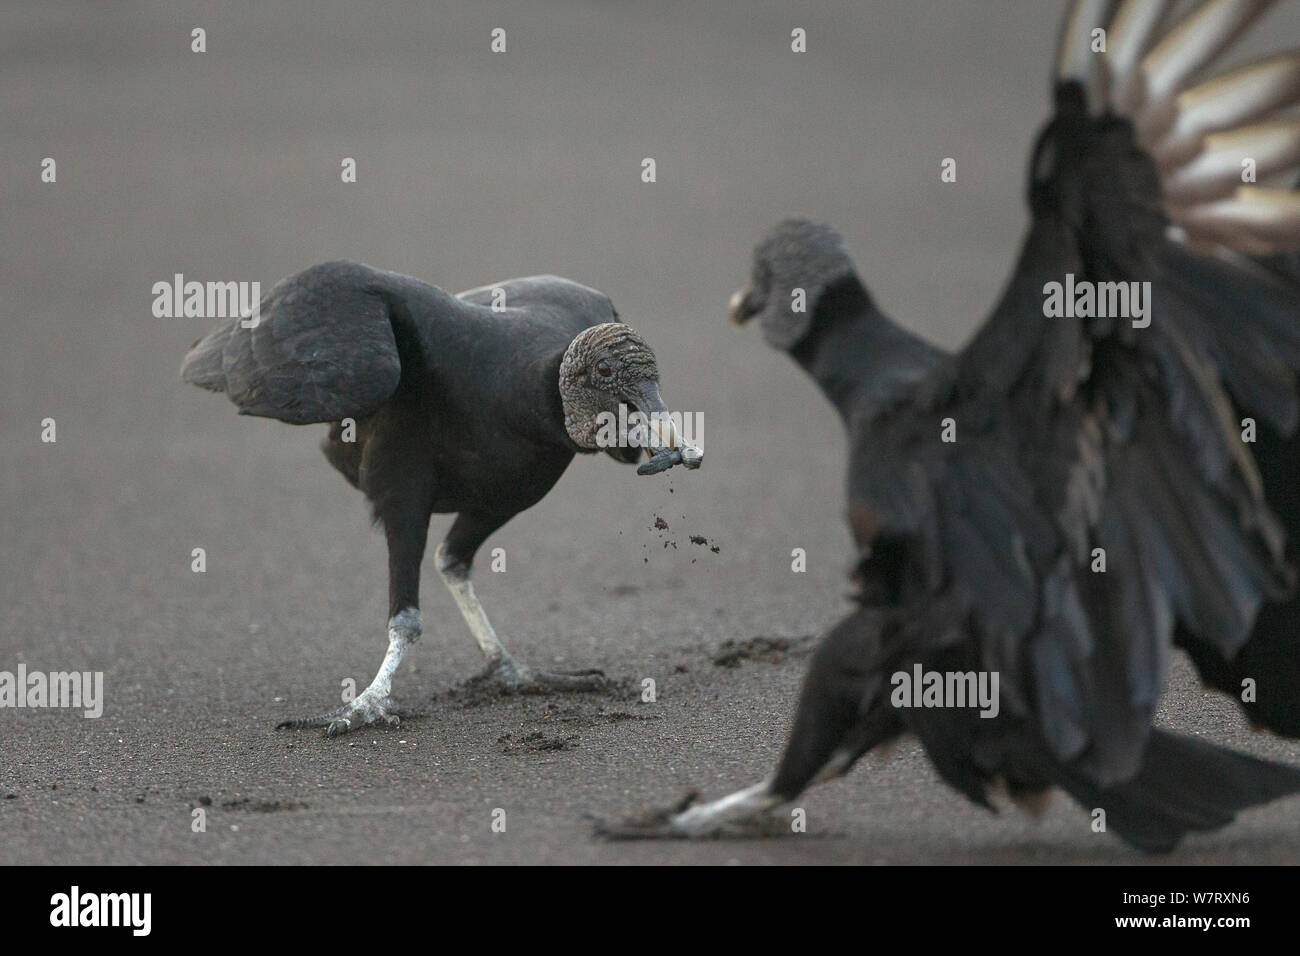 Les vautours noirs (Coragyps atratus) sur l'alimentation des nouveau-nés de tortues olivâtres (Lepidochelys olivacea) Côte du Pacifique, Playa Ostional, Costa Rica. Banque D'Images